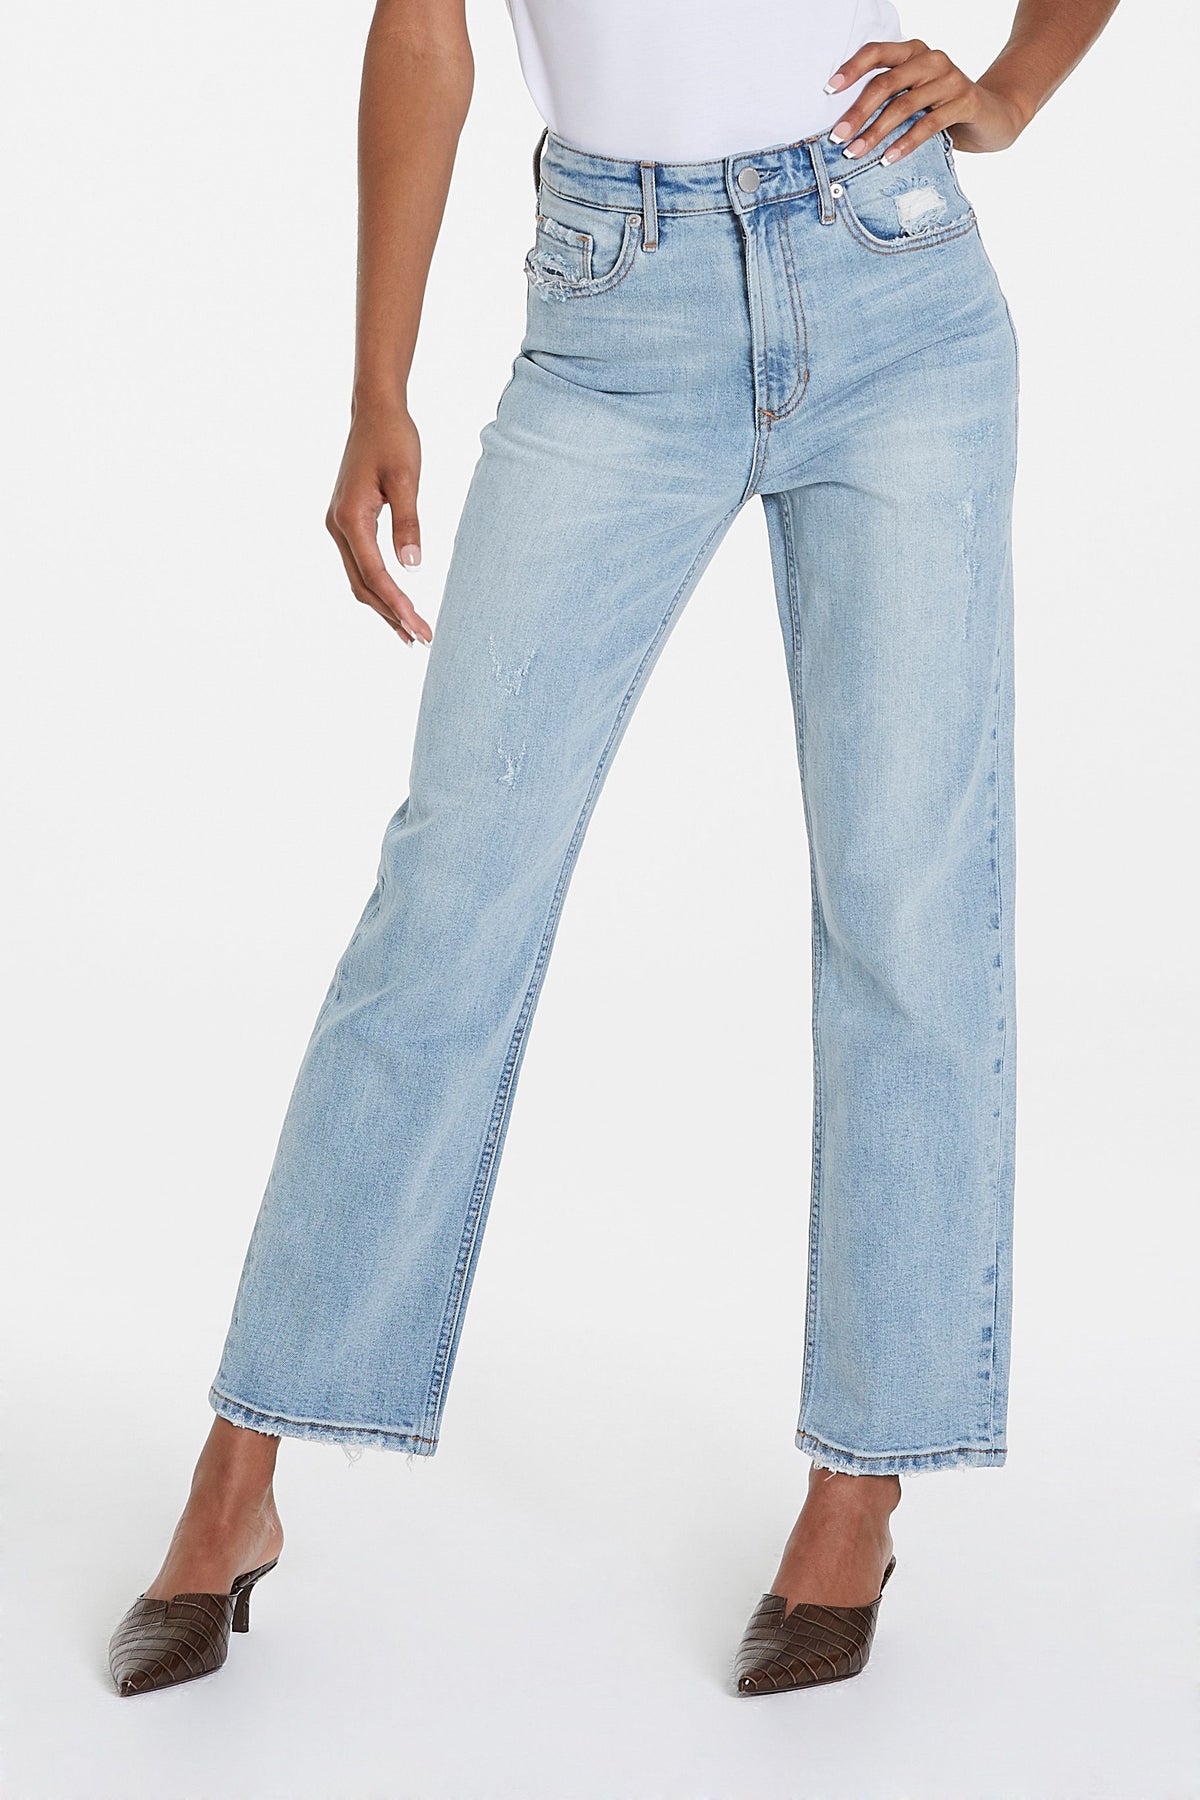 90's Calabasas Jeans